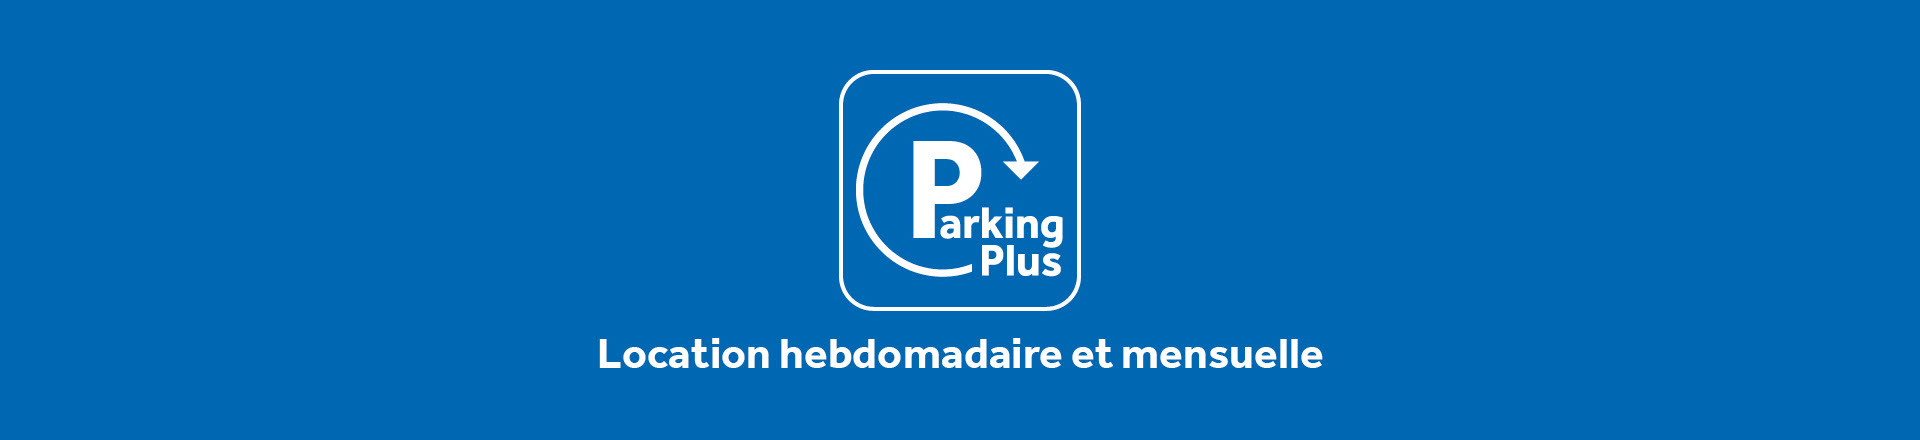 Parking Plus